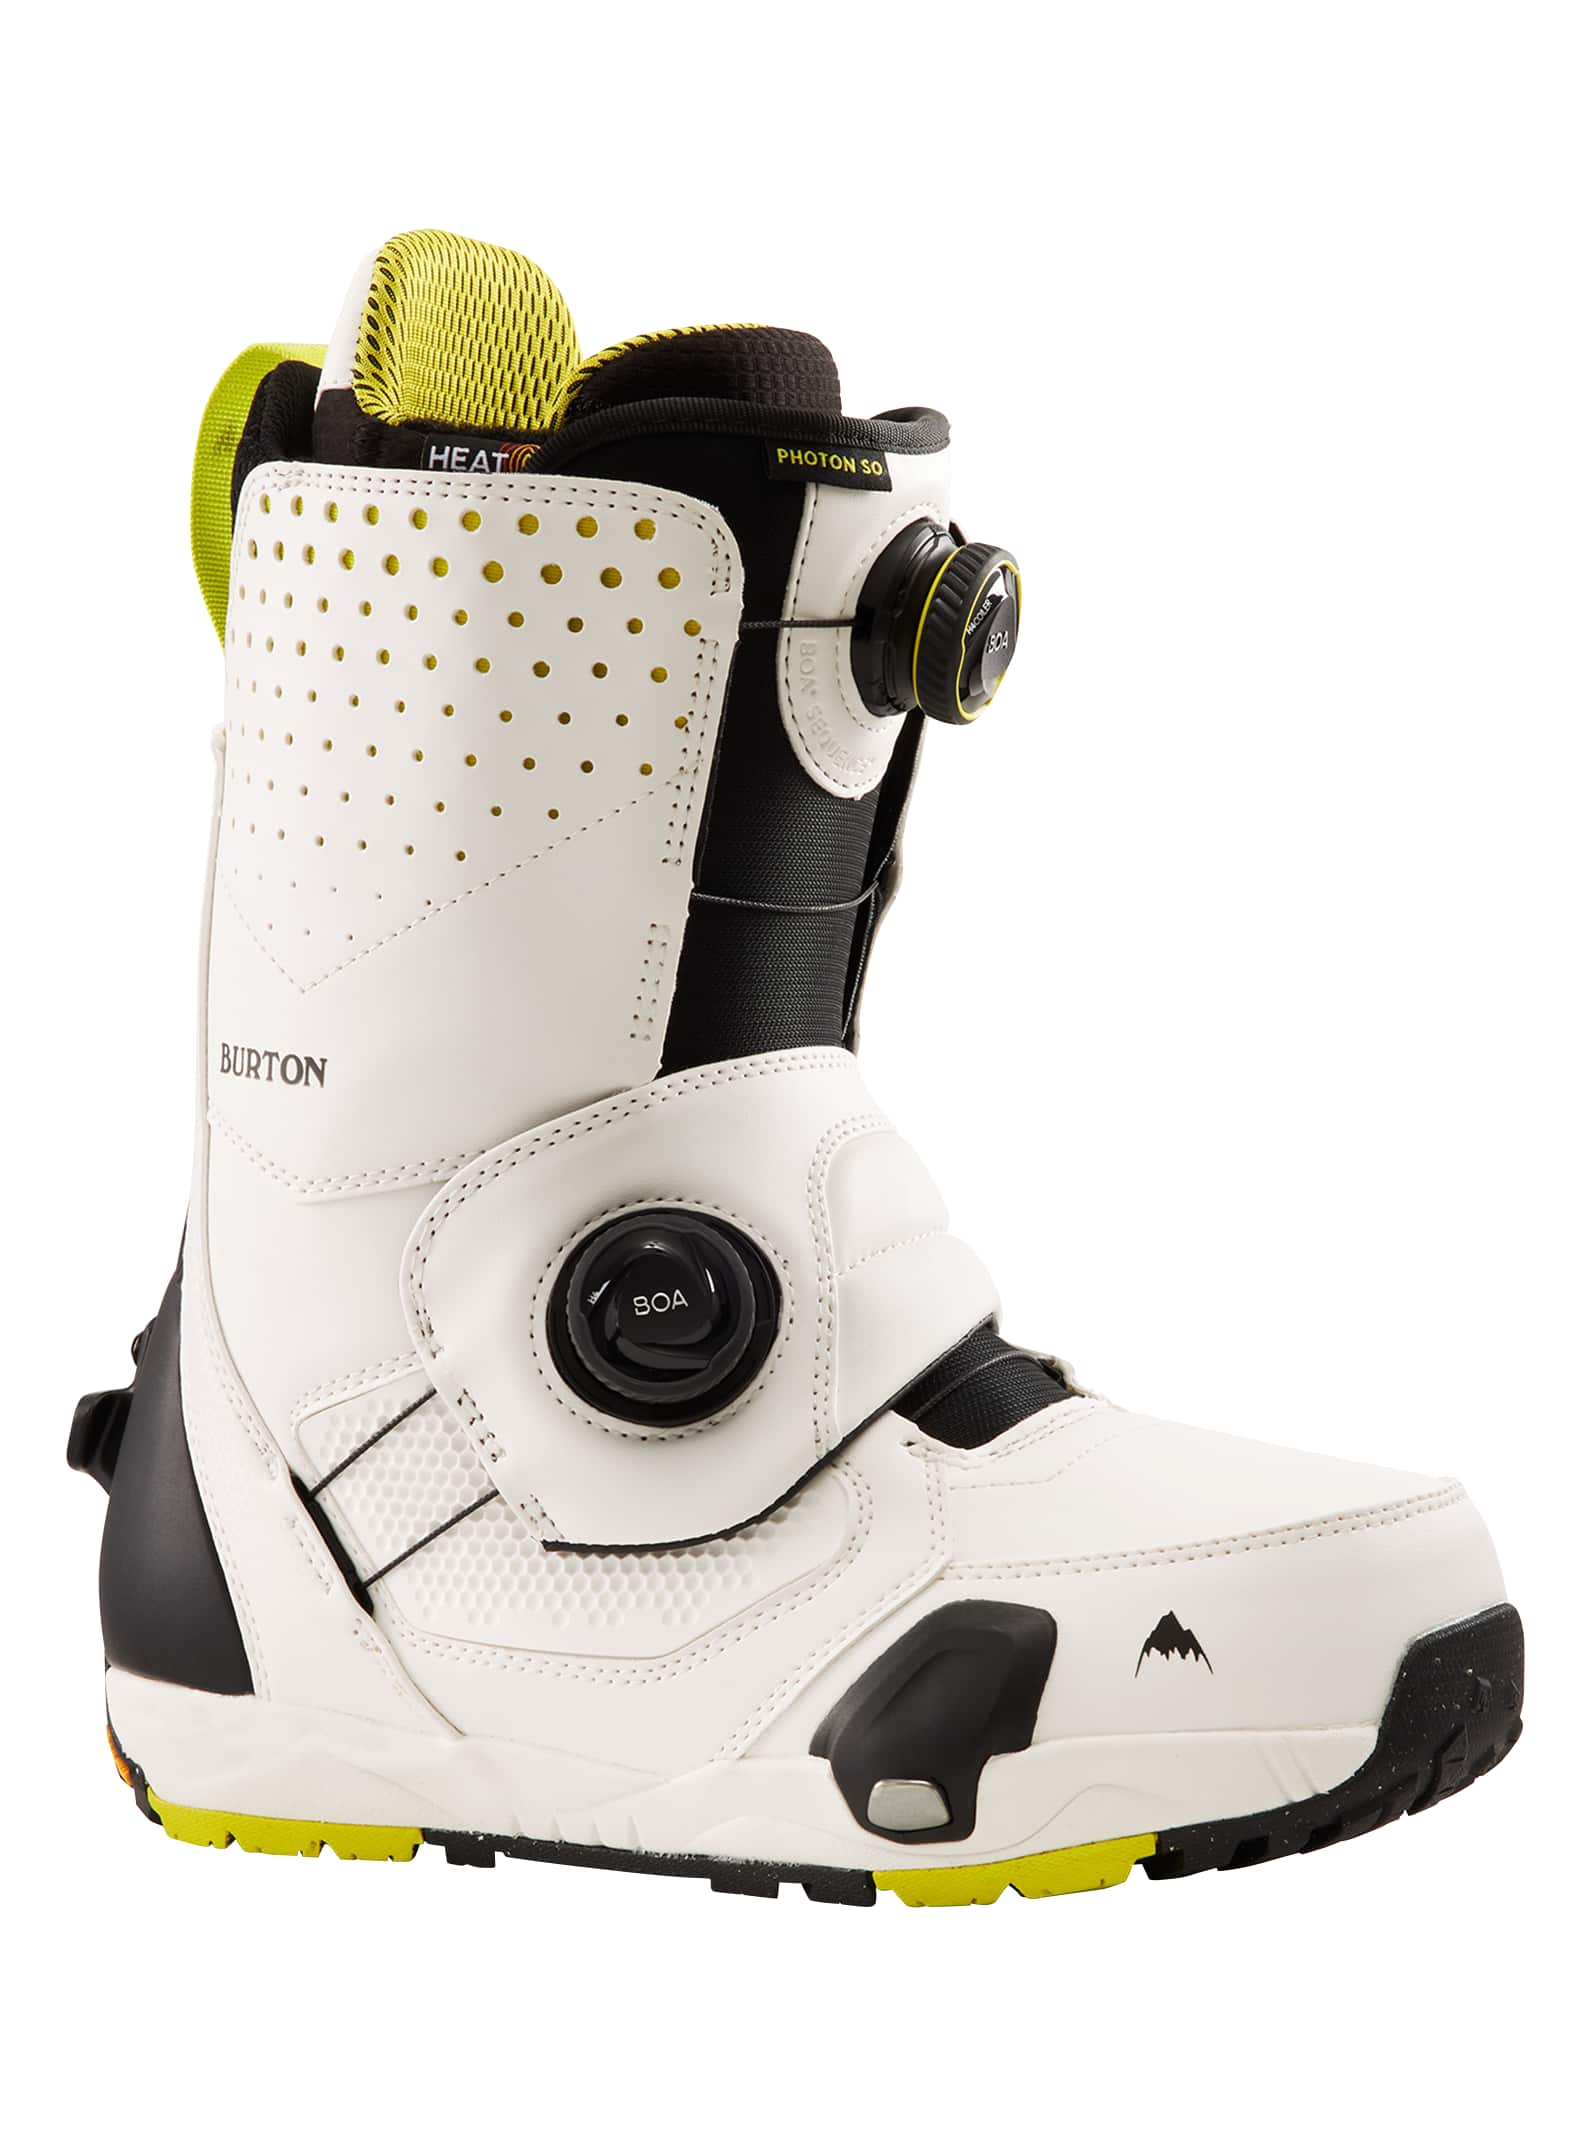 30360円 【人気商品】 バートン ステップオン ブーツ メンズ W22JP-229511 Mens Burton Kendo Step On Snowboard Boots ケンドー スノーボードブーツ ブーツレース 編み上げ